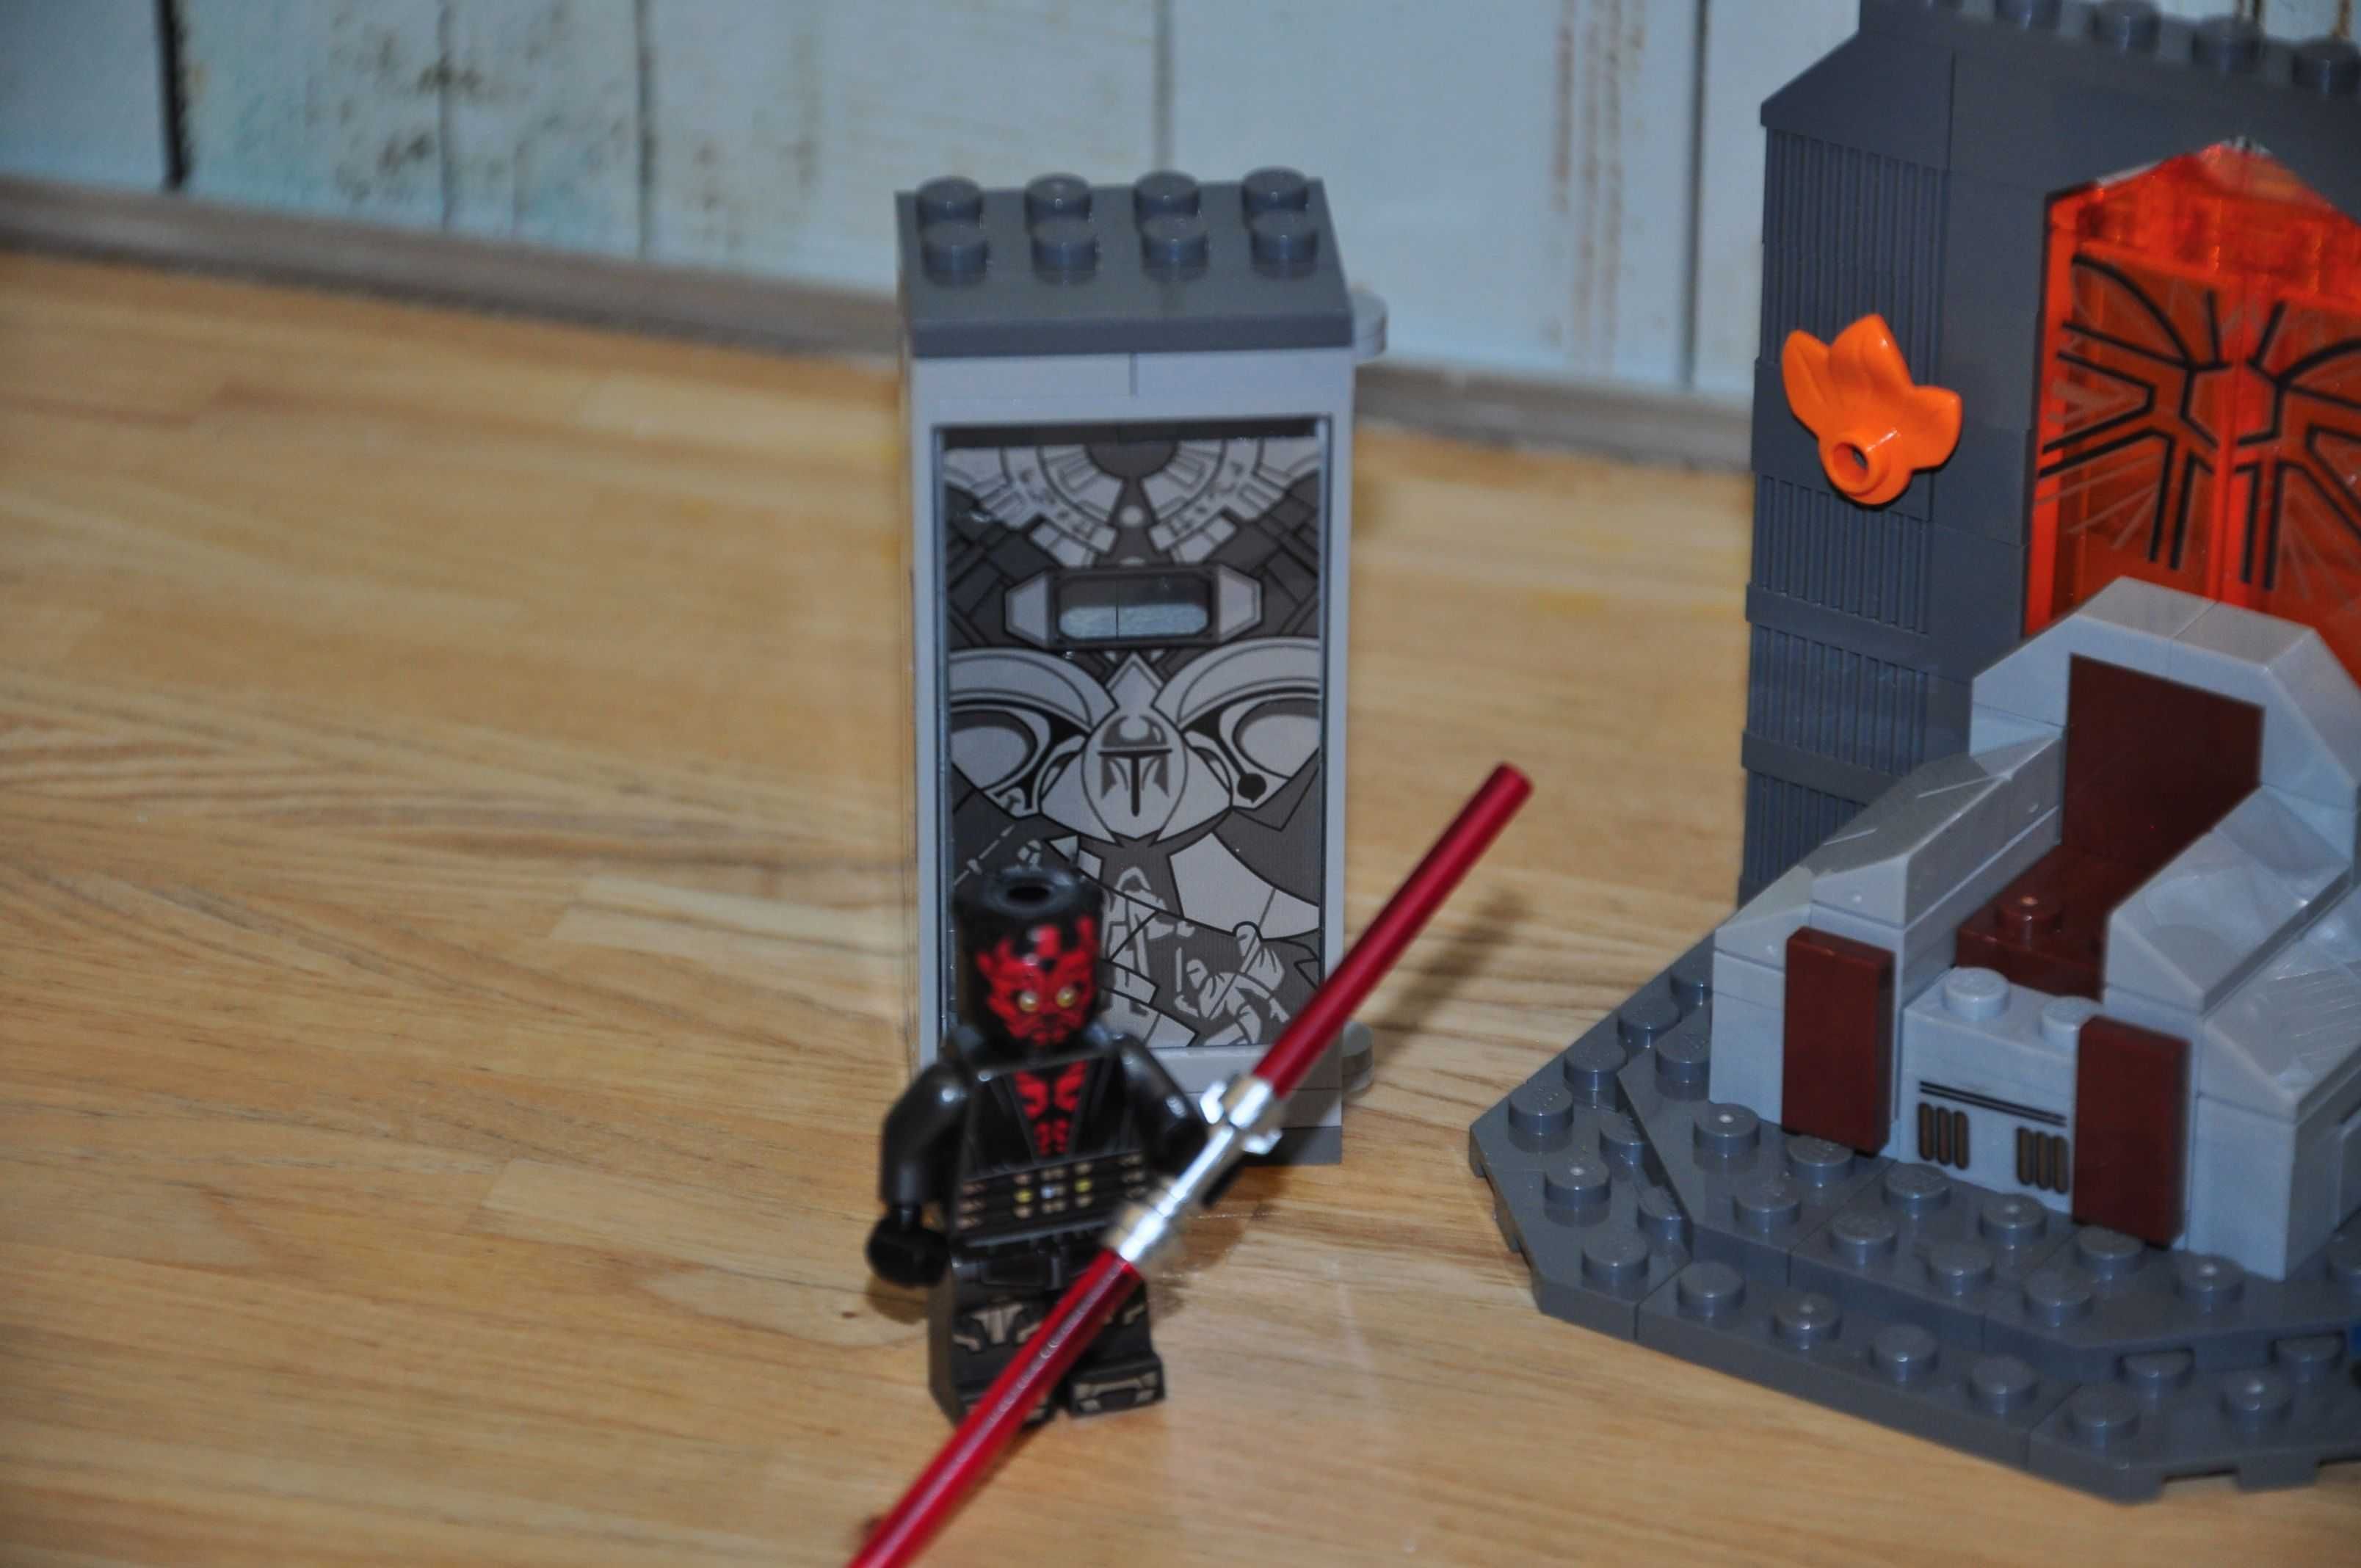 Z0143. Zestaw LEGO Star Wars 75310-1 Starcie na Mandalore